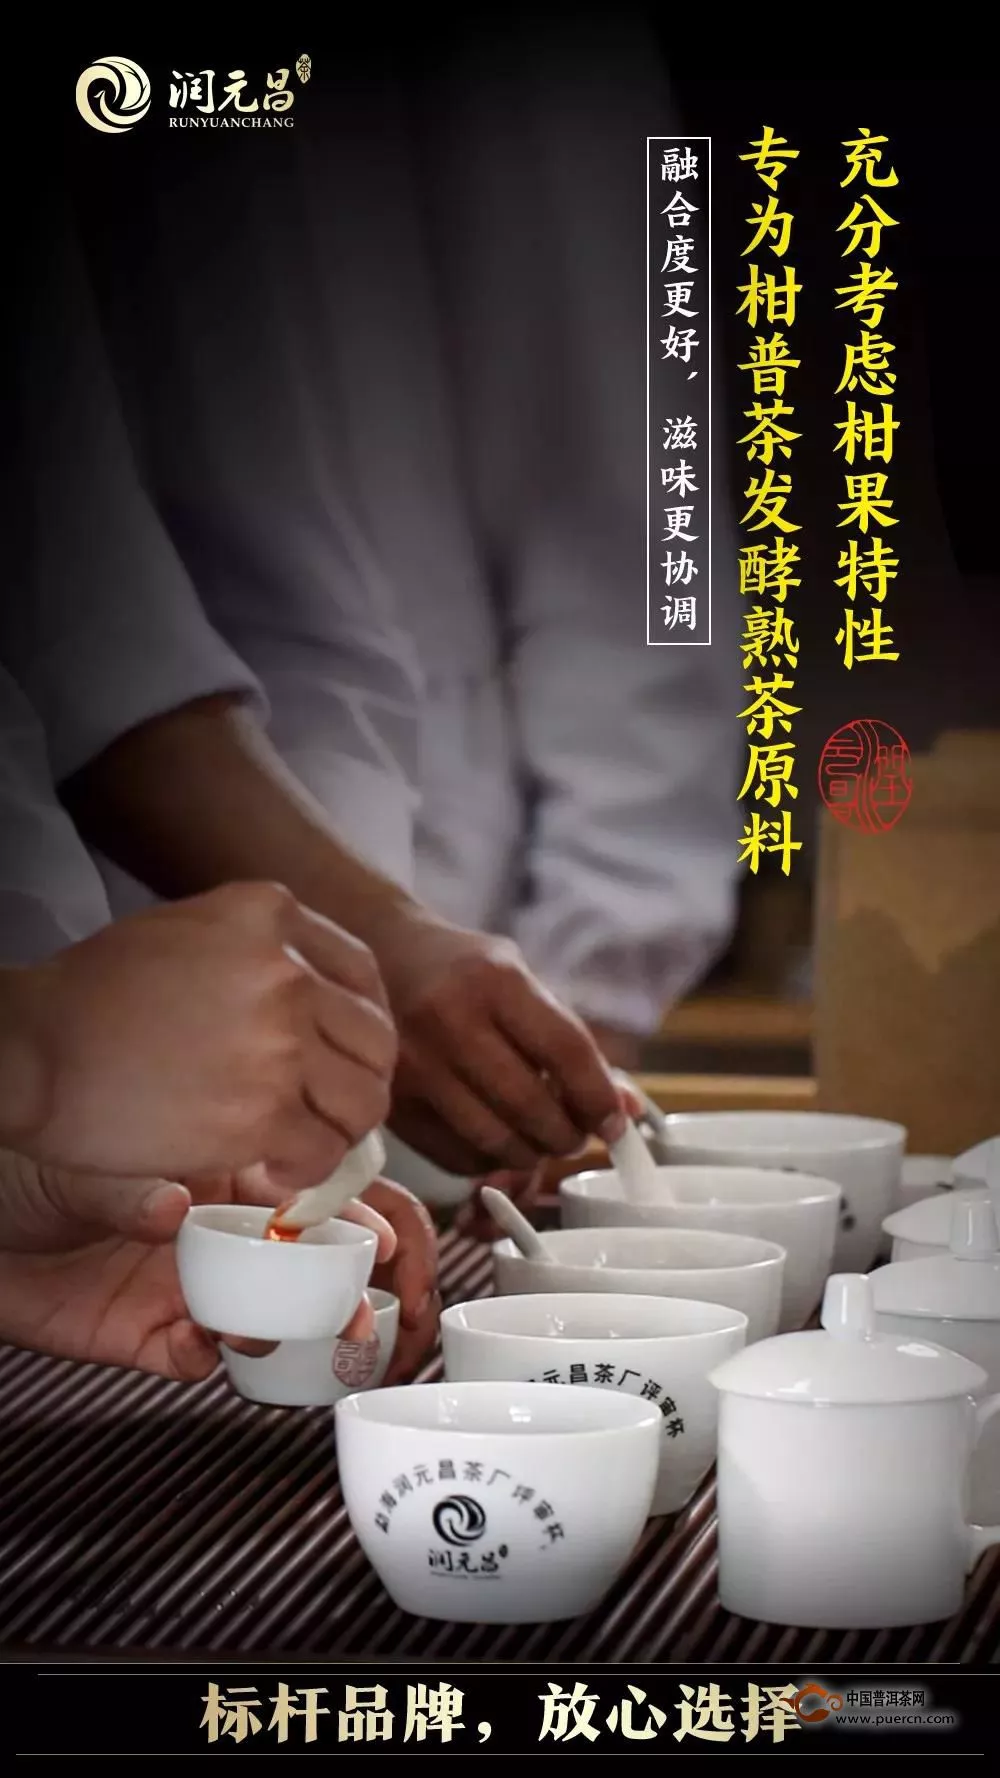 正宗地道，一贯品质：润元昌柑普茶，以品质和创新领跑市场